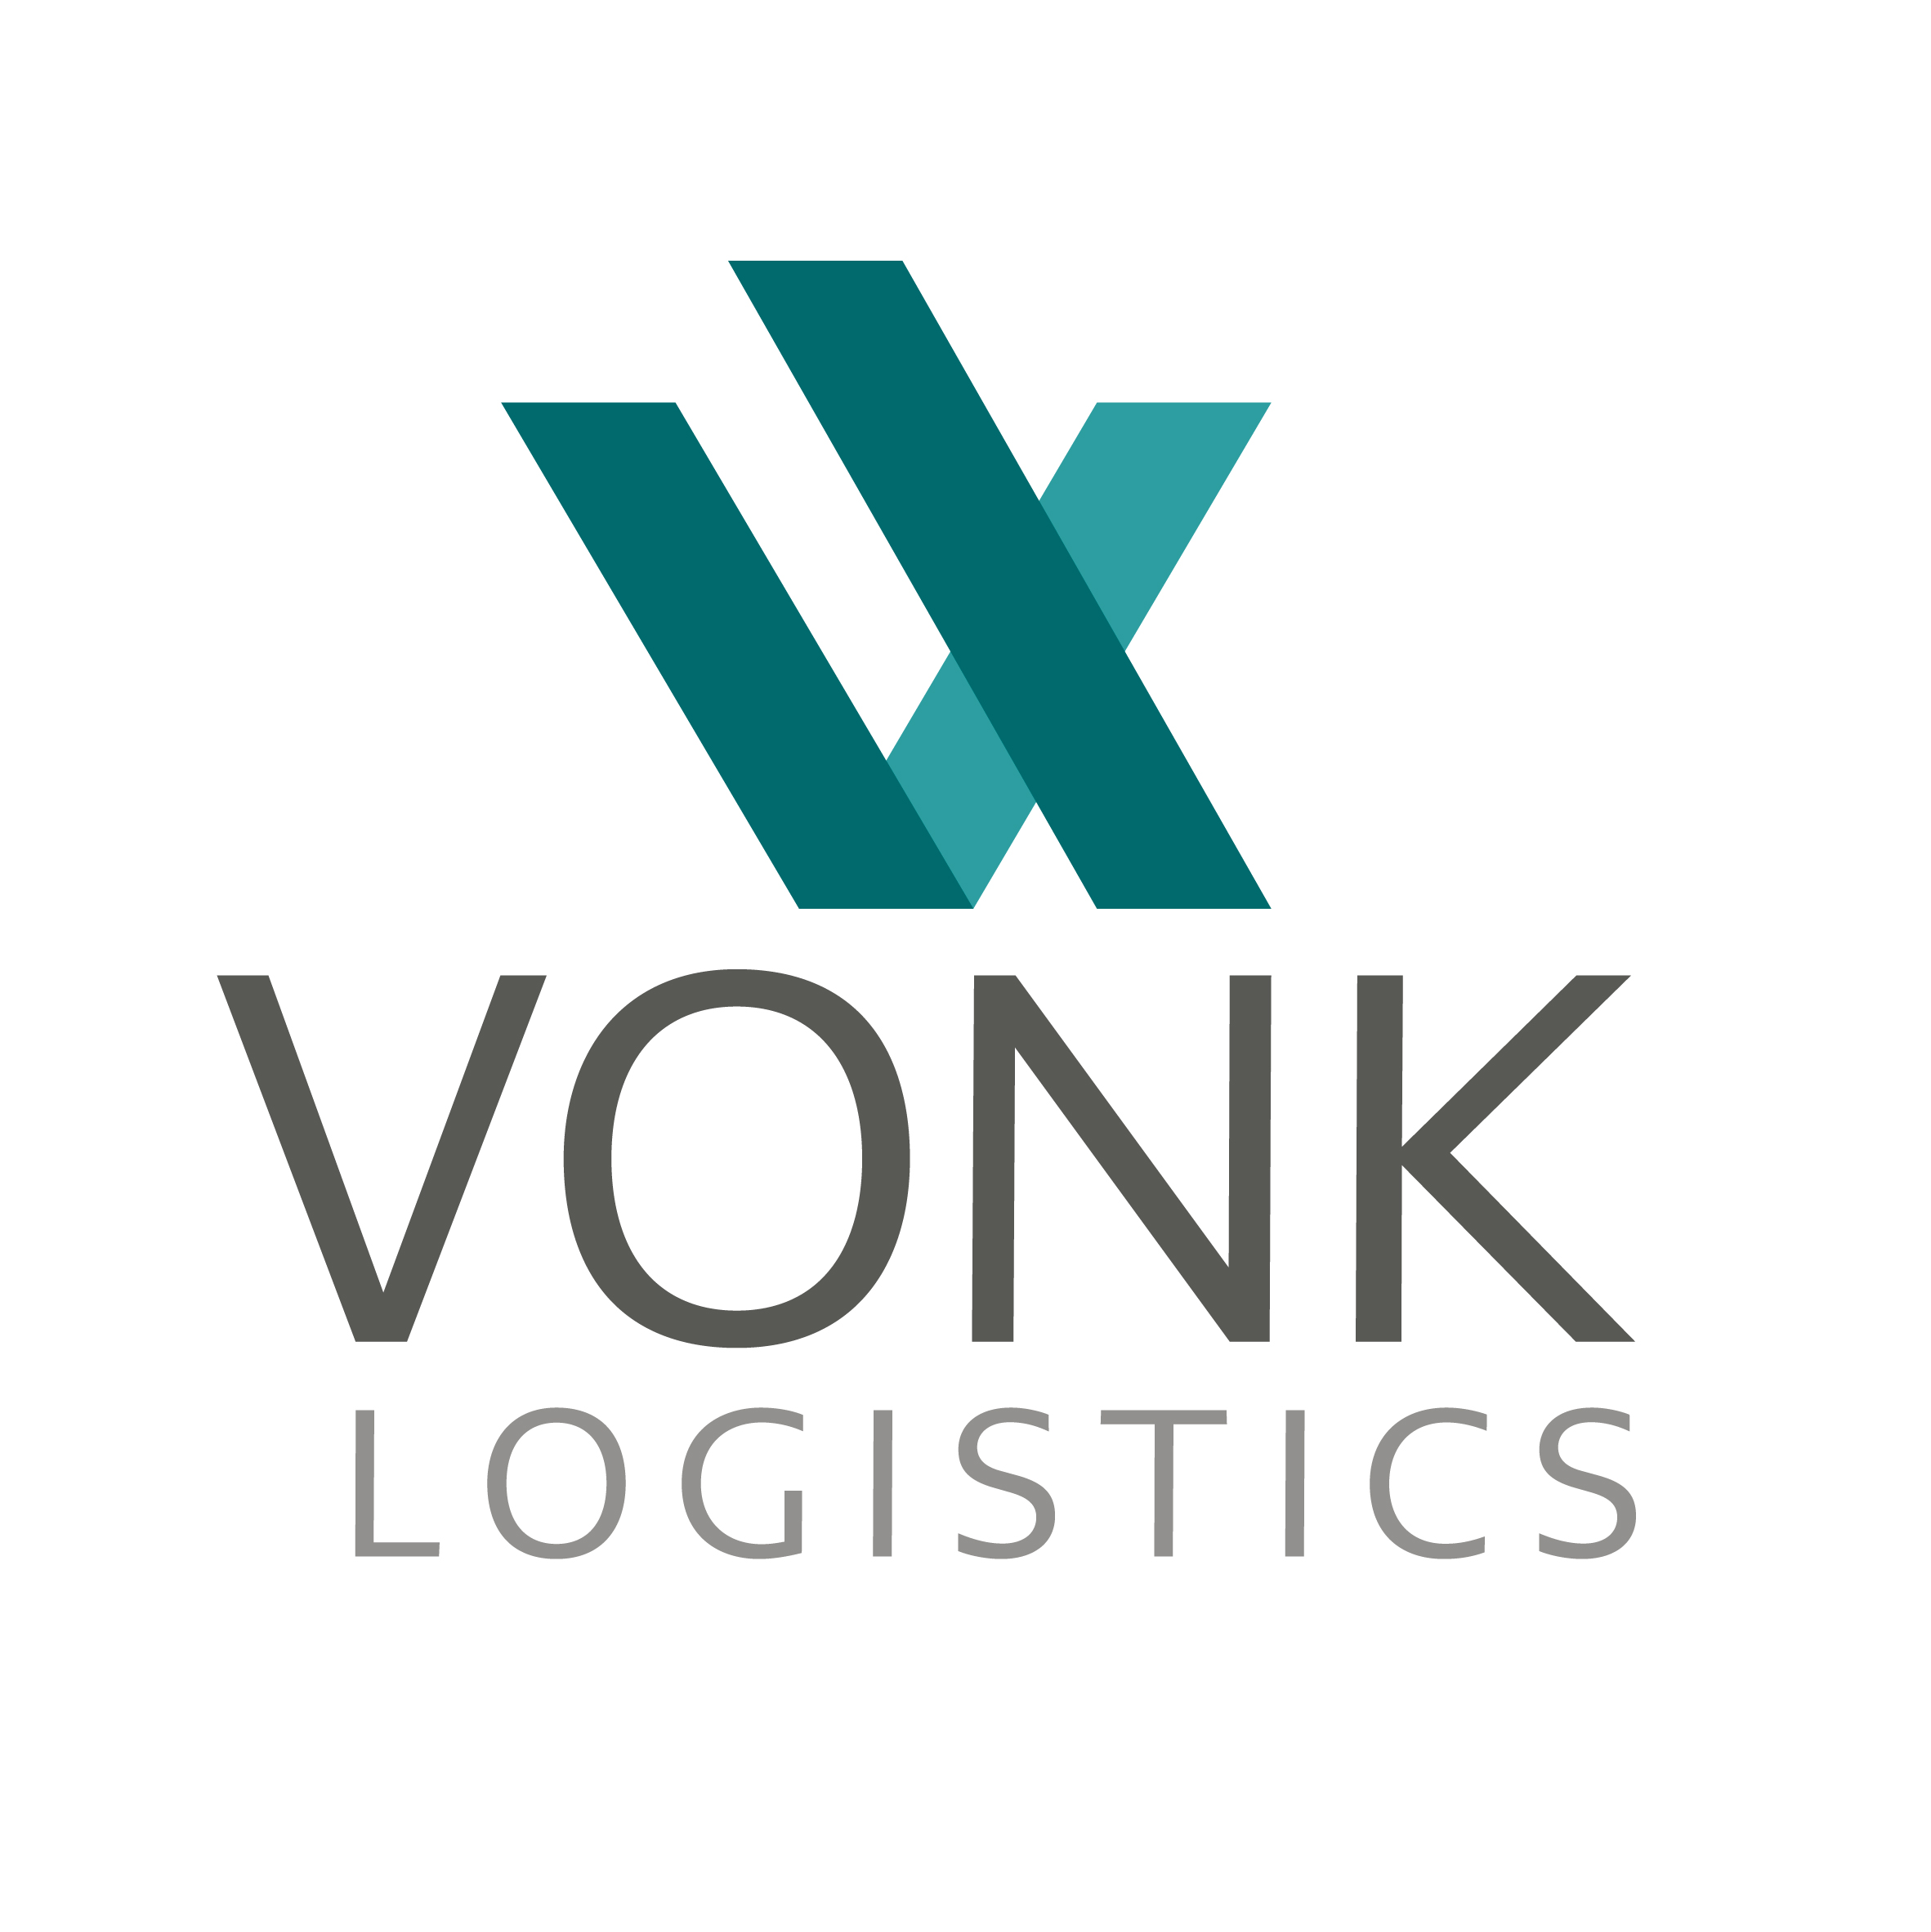 Vonk logistics